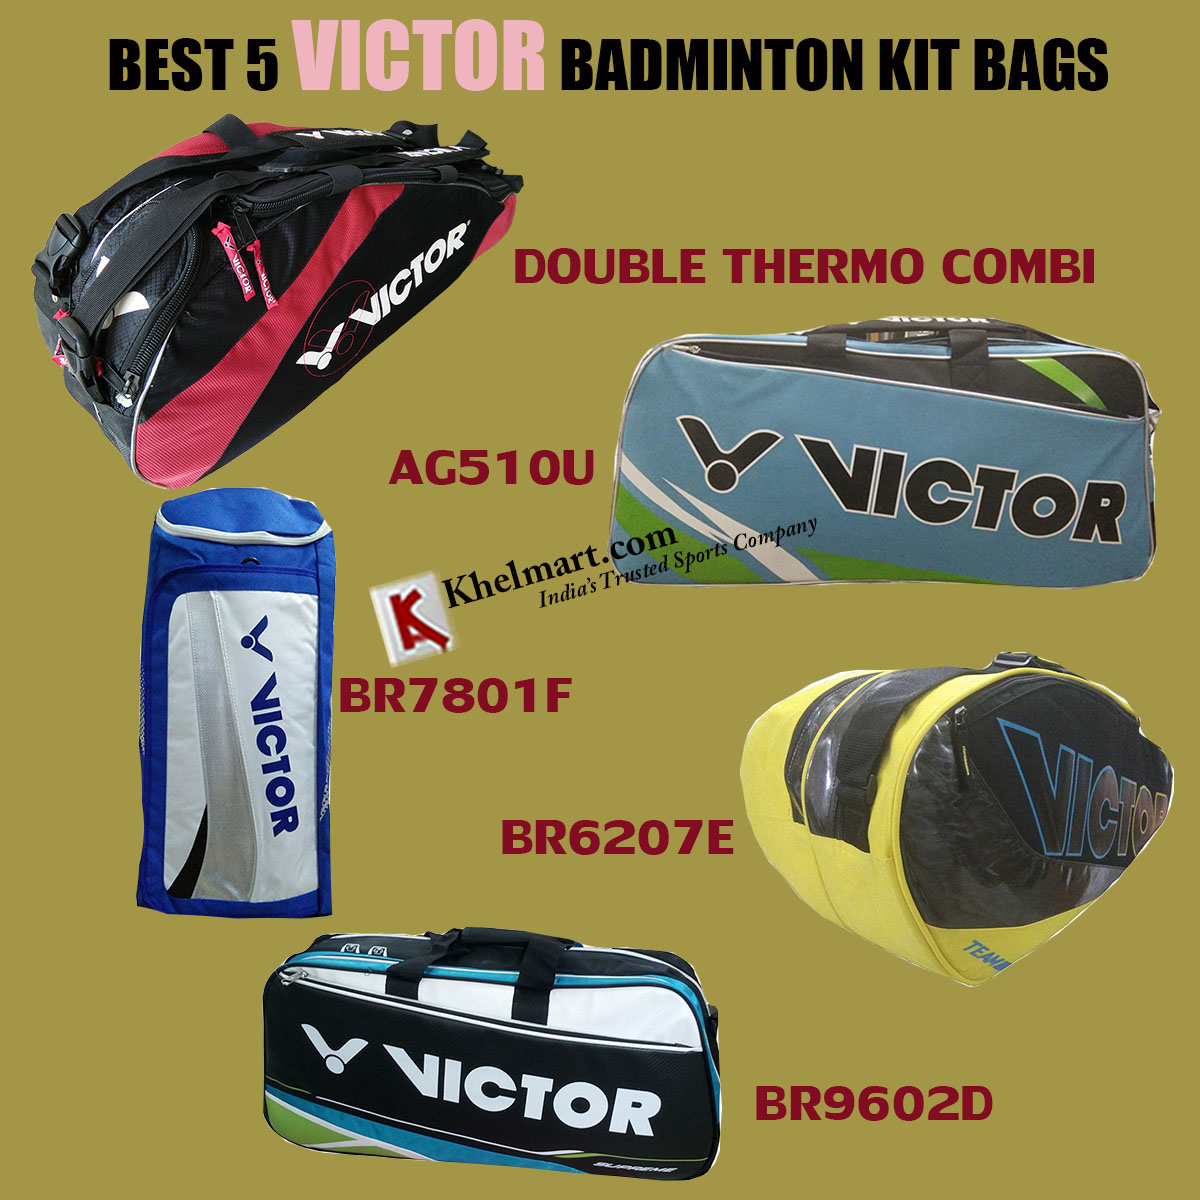 Best_5_Victor_badminton_kit_bags.jpg